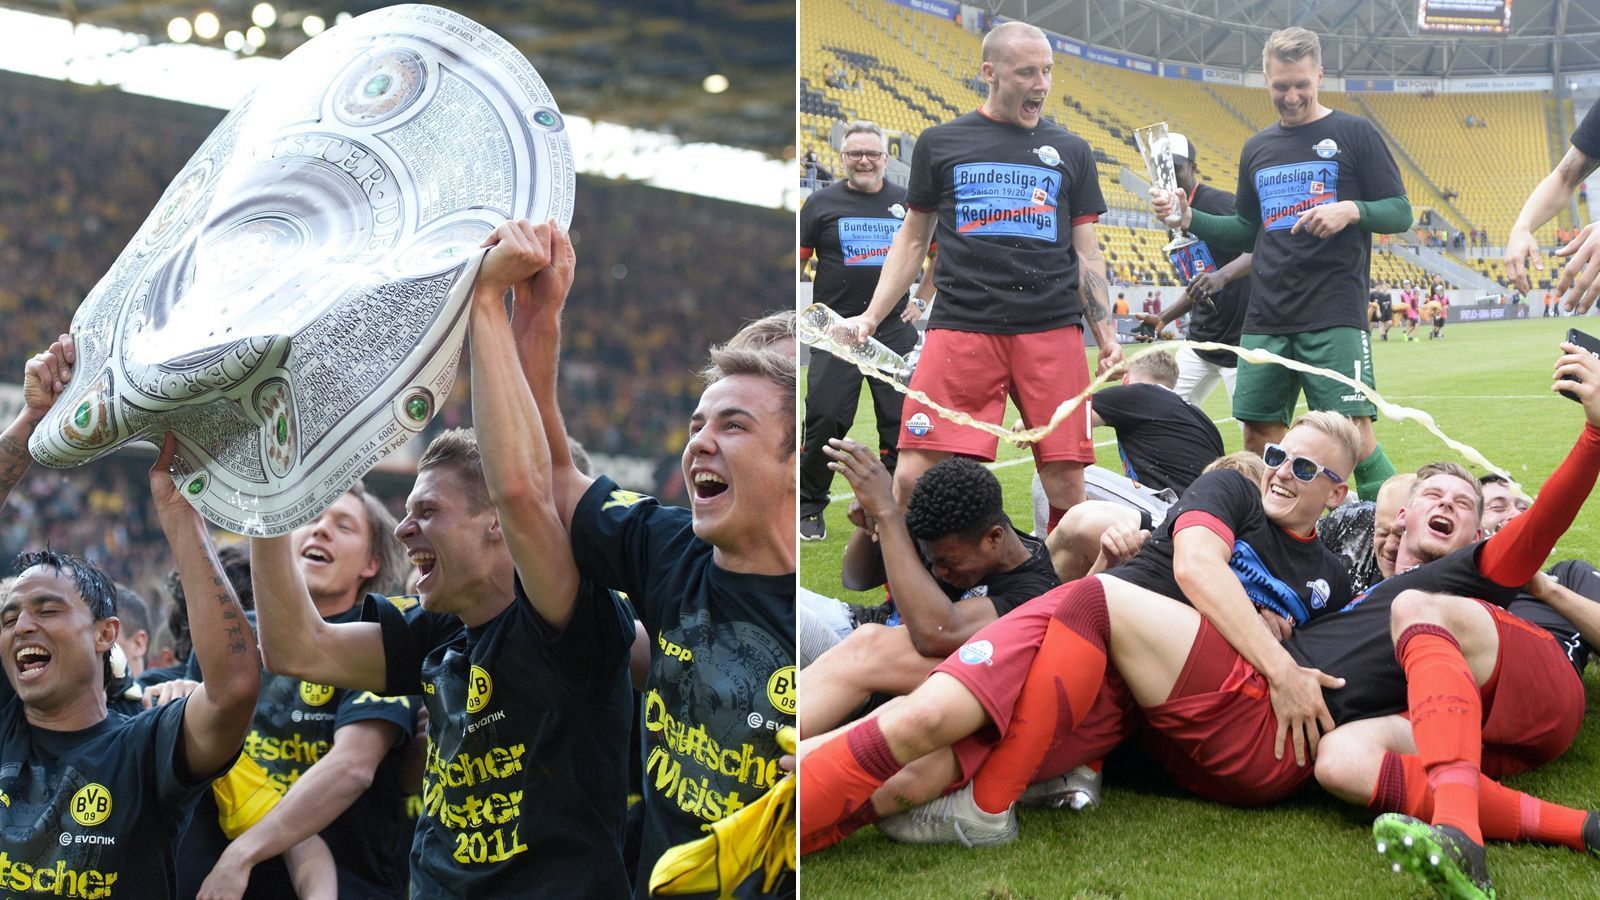 
                <strong>Titel</strong><br>
                In Sachen Erfolge in Form von Titeln ist Borussia Dortmund dem SC Paderborn natürlich auch meilenweit voraus. So holte der BVB bislang acht Mal den Meistertitel, vier Mal den DFB-Pokal, ein Mal die Champions League und ein Mal den Weltpokal. Der SC Paderborn hat hingegen noch keinen einzigen Titel in seiner Vereinsgeschichte im Profifußball einfahren können. Als bislang größte sportliche Erfolge zählen die beiden Bundesliga-Aufstiege in den Jahren 2014 und 2019. 
              